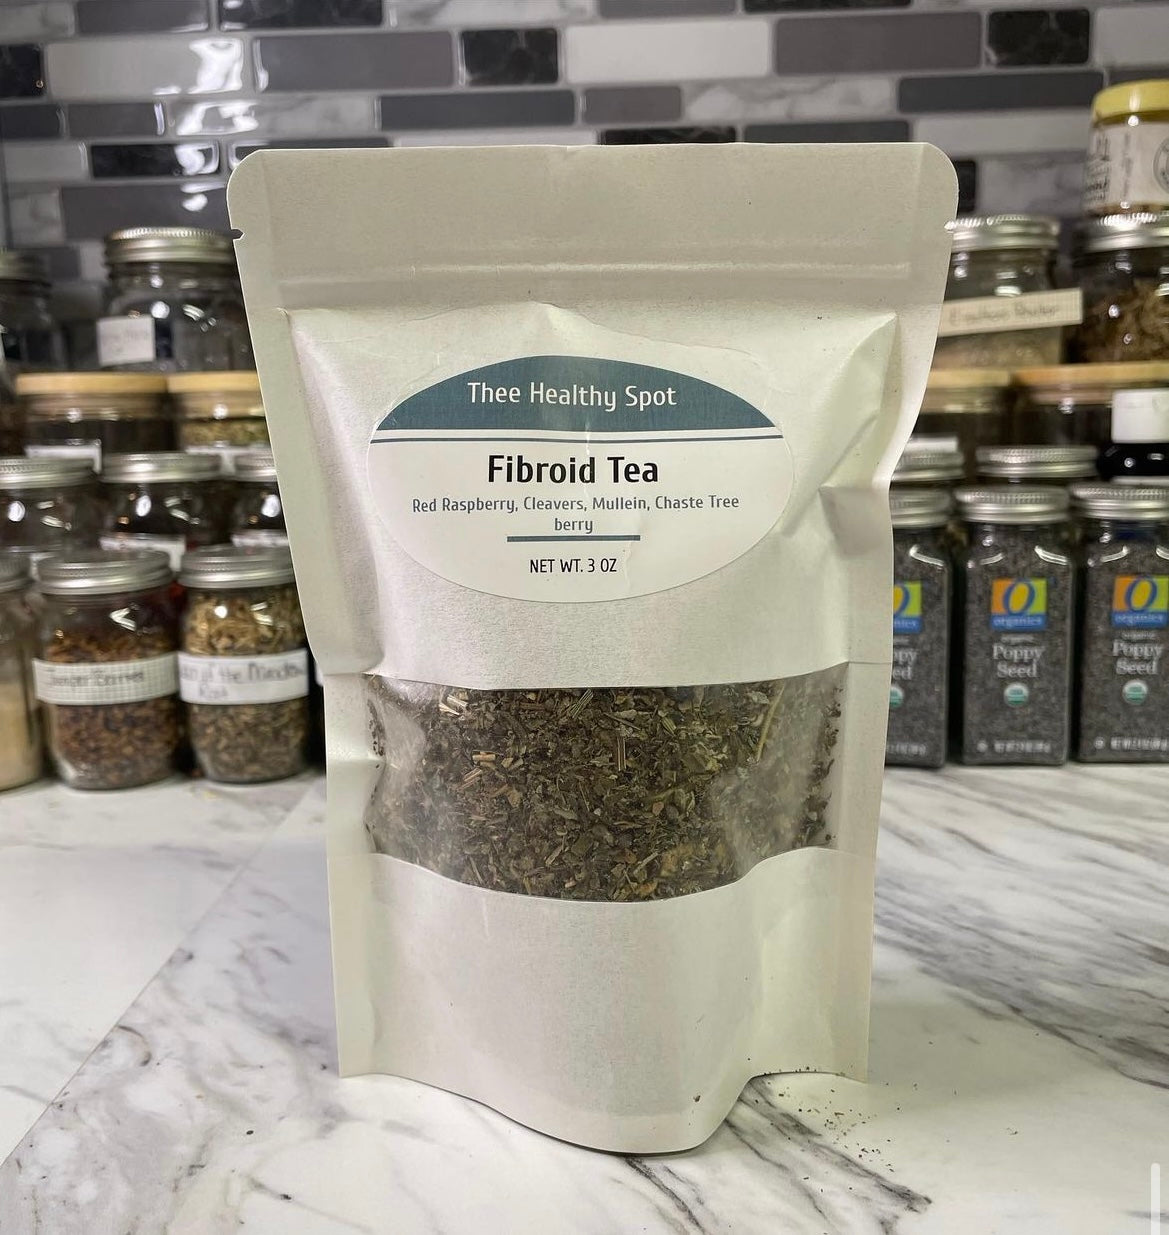 Herbal Tea Blends